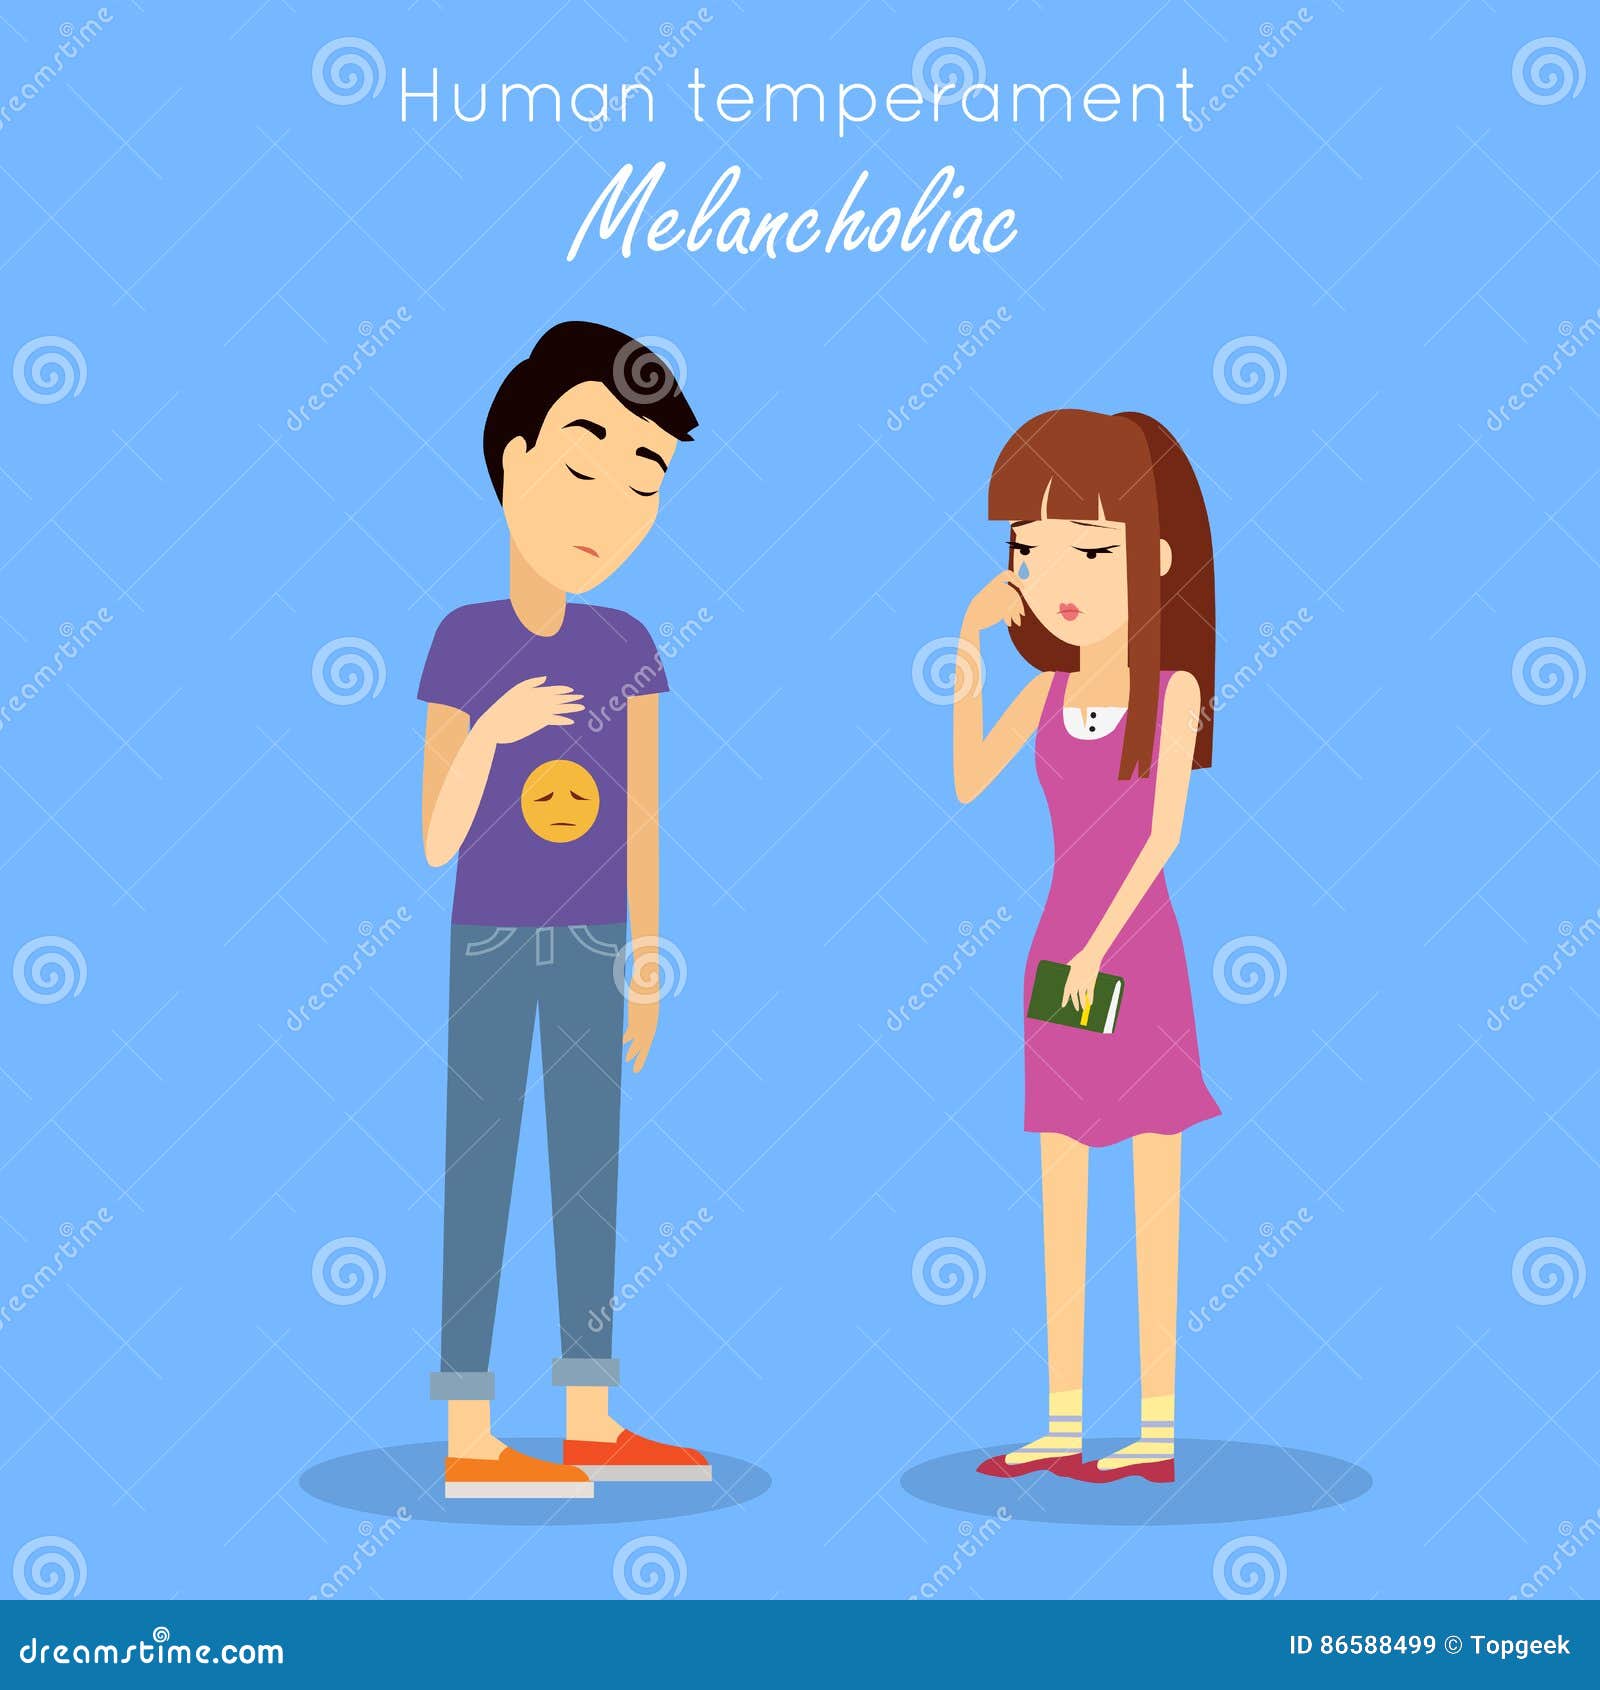 human temperament concept  in flat 